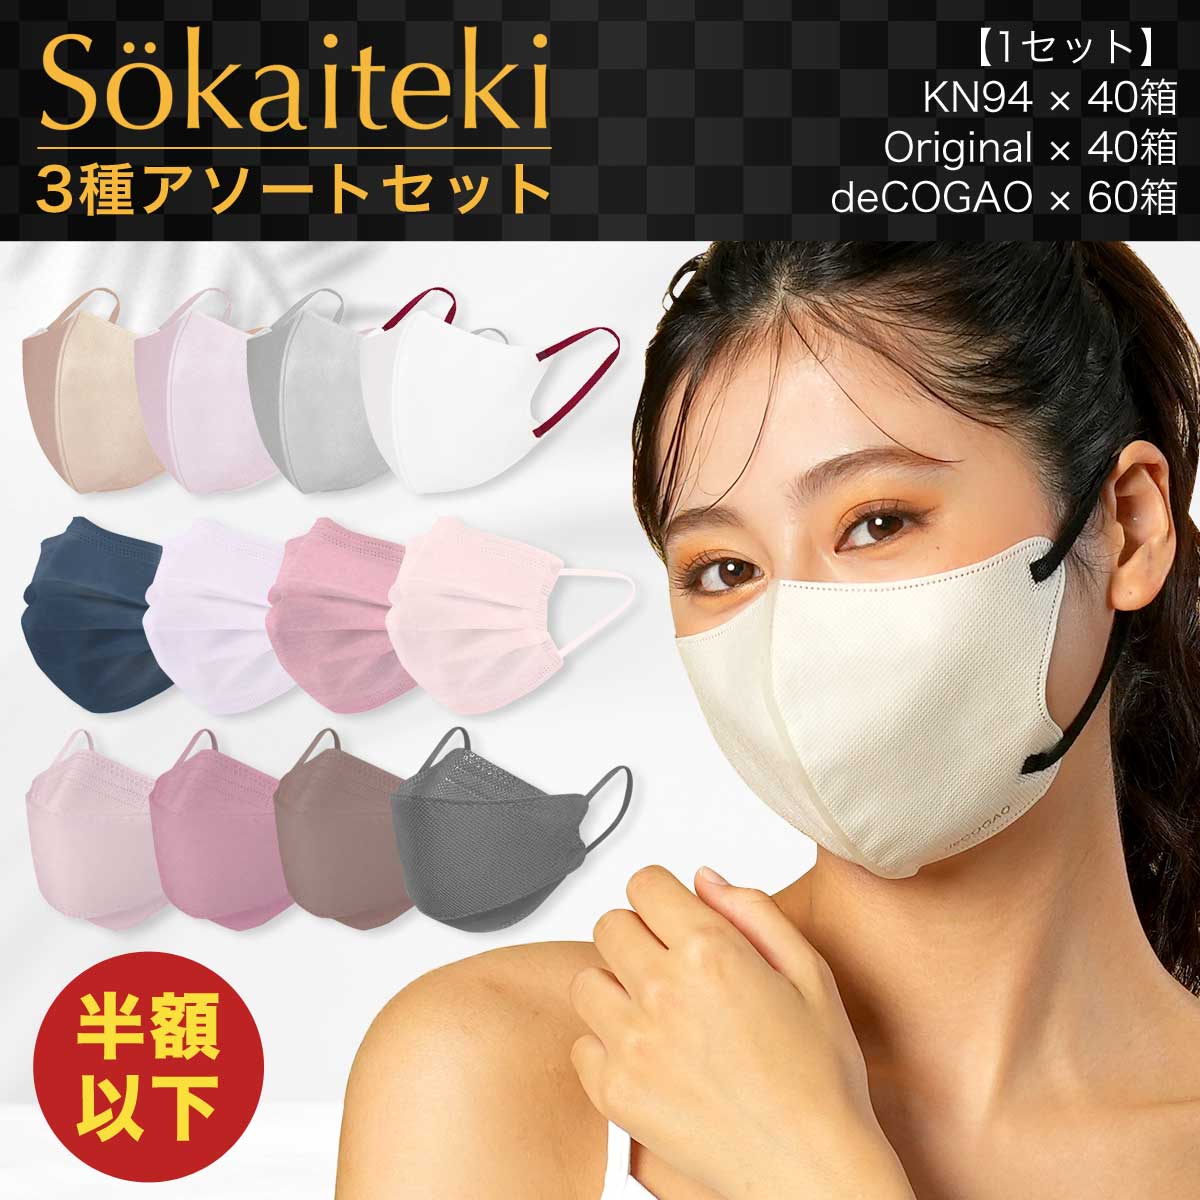 【1/5まで限定セット】Sokaiteki マスク 各種アソート 3Dマスク deCOGAO Original KN94 立体マスク